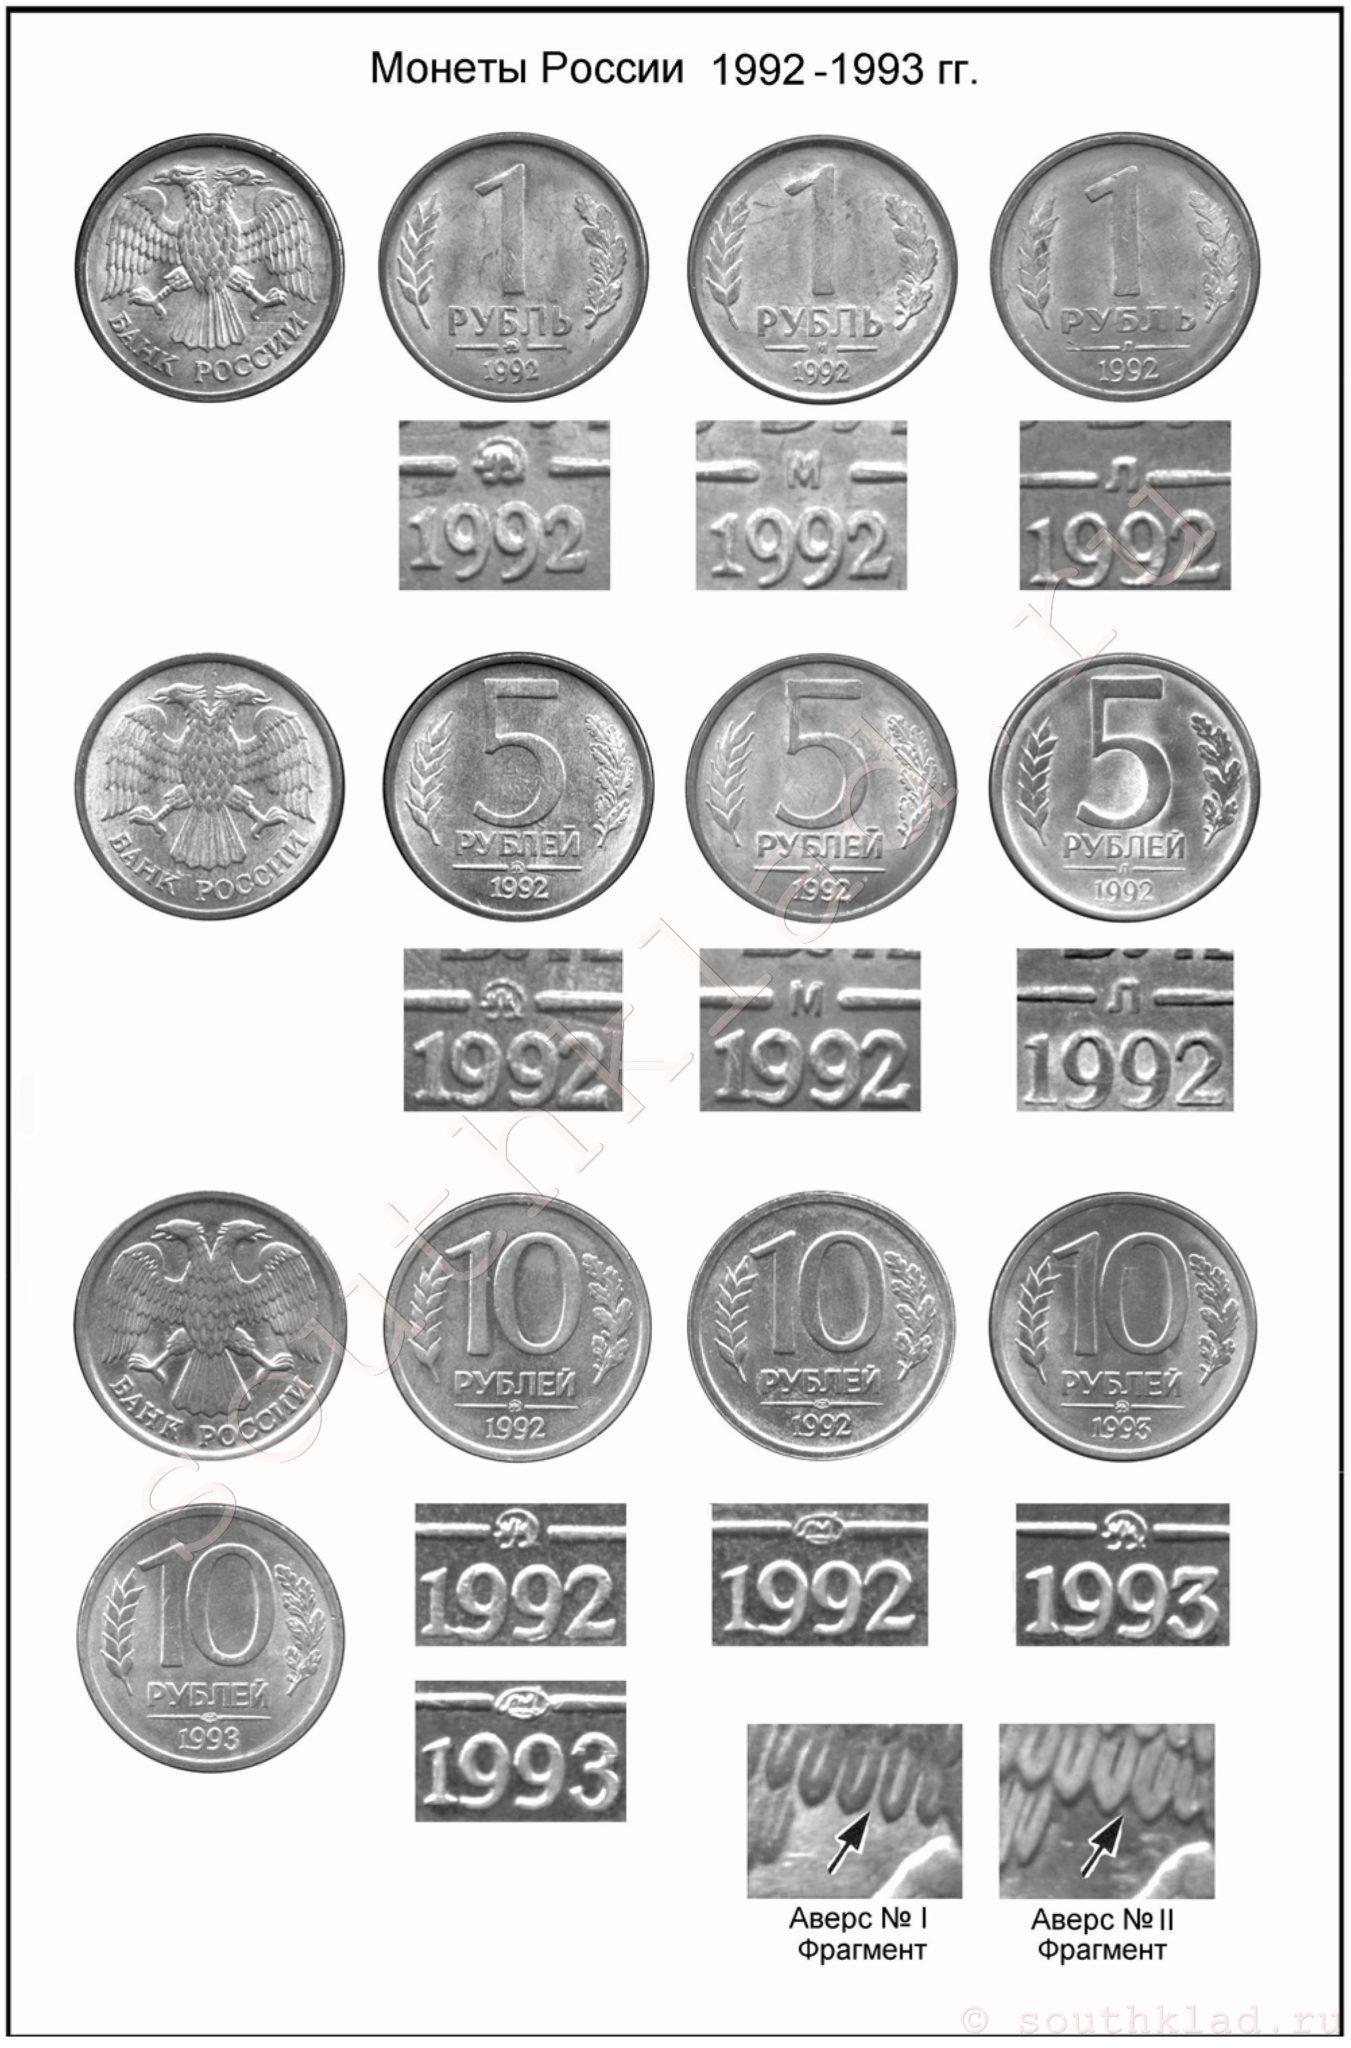 Монеты России образца 1992 - 1993 гг.